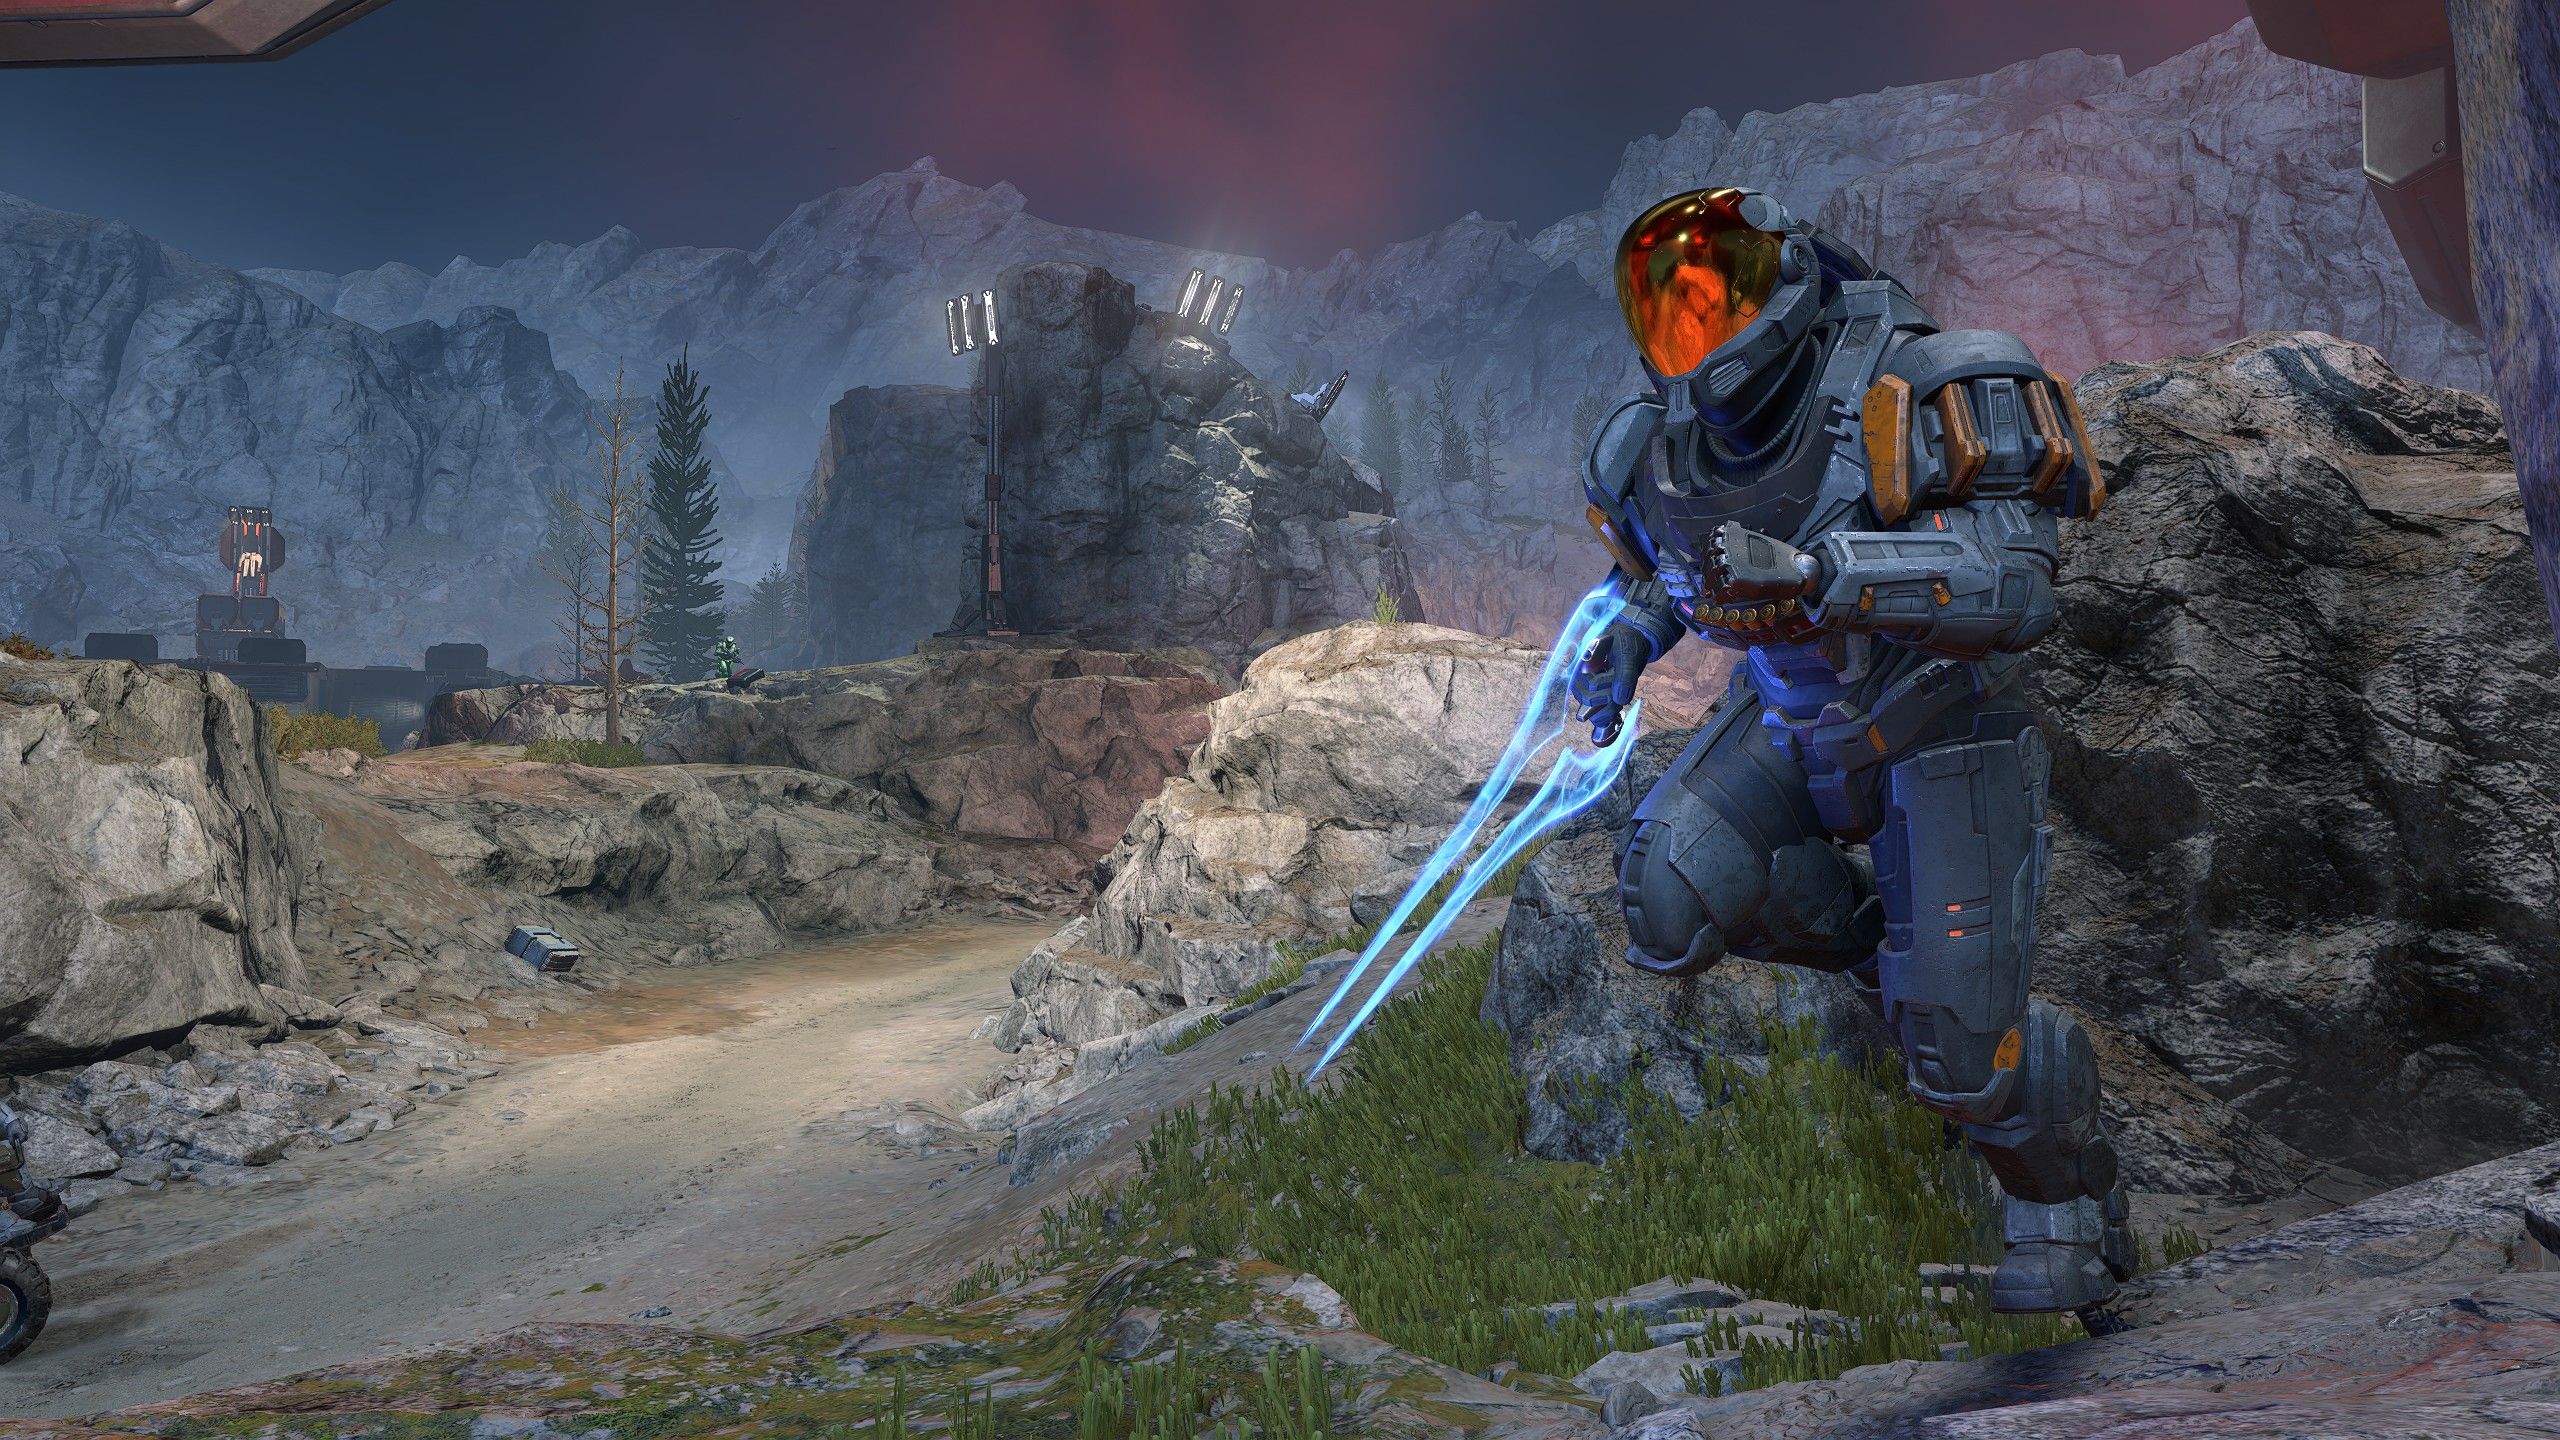 A spartan in Halo Infinite runs through rocky terrain